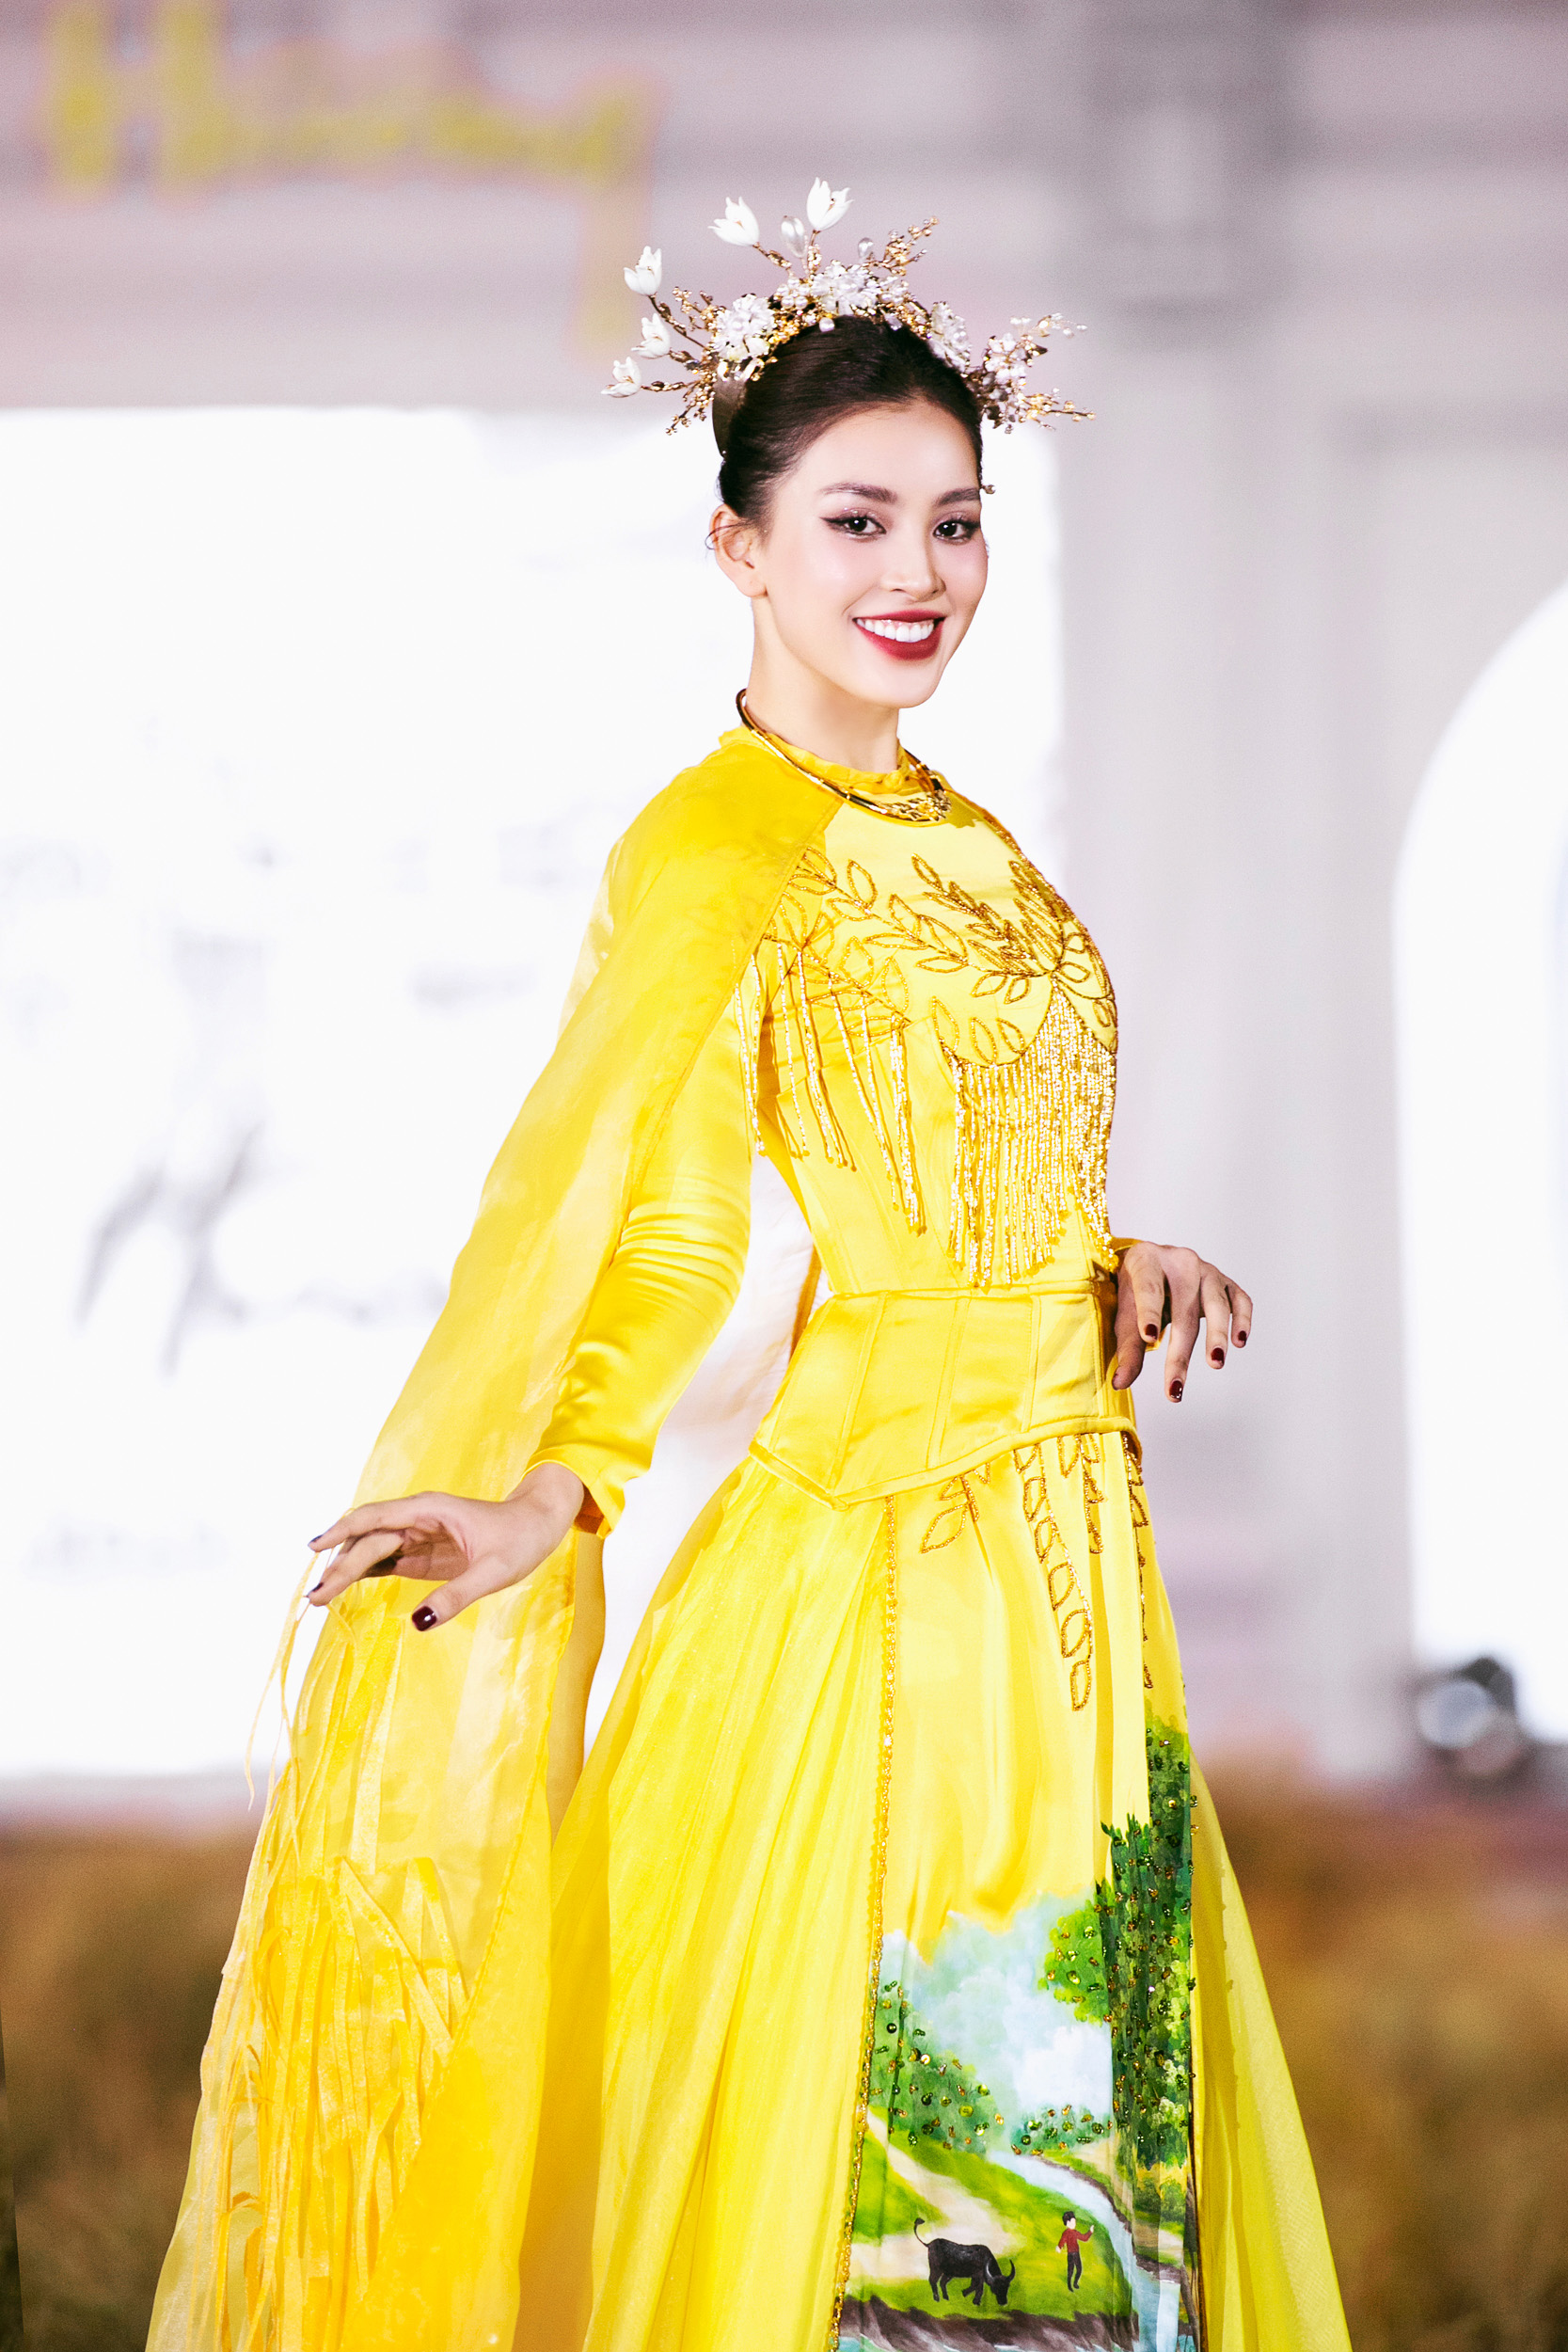 Hoa hậu Tiểu Vy nhan sắc ở tuổi 23 - Ảnh 2.